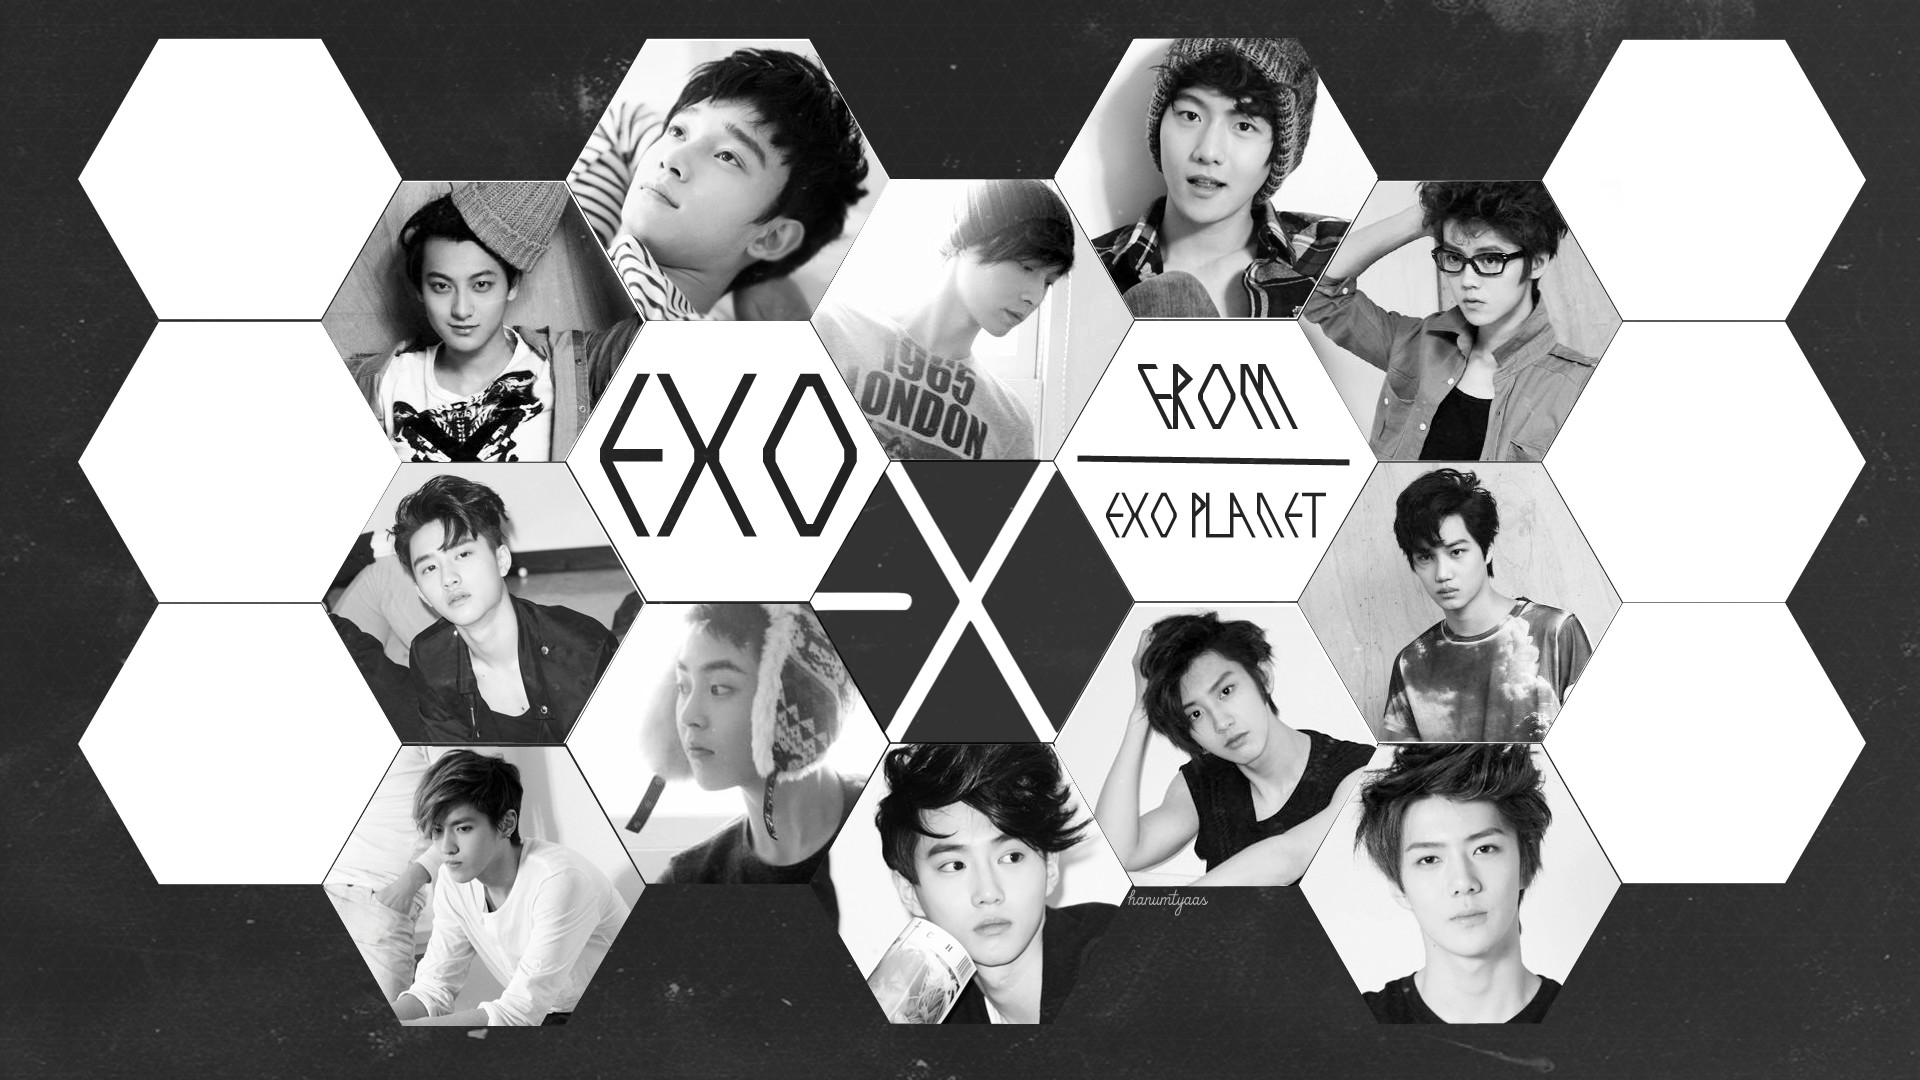 1920x1080 Exo wallpaperââ¤â - BlackPearlLuver Fan Art (37711025) - Fanpop | EXO |  Pinterest | Exo and Exo wallpaper hd